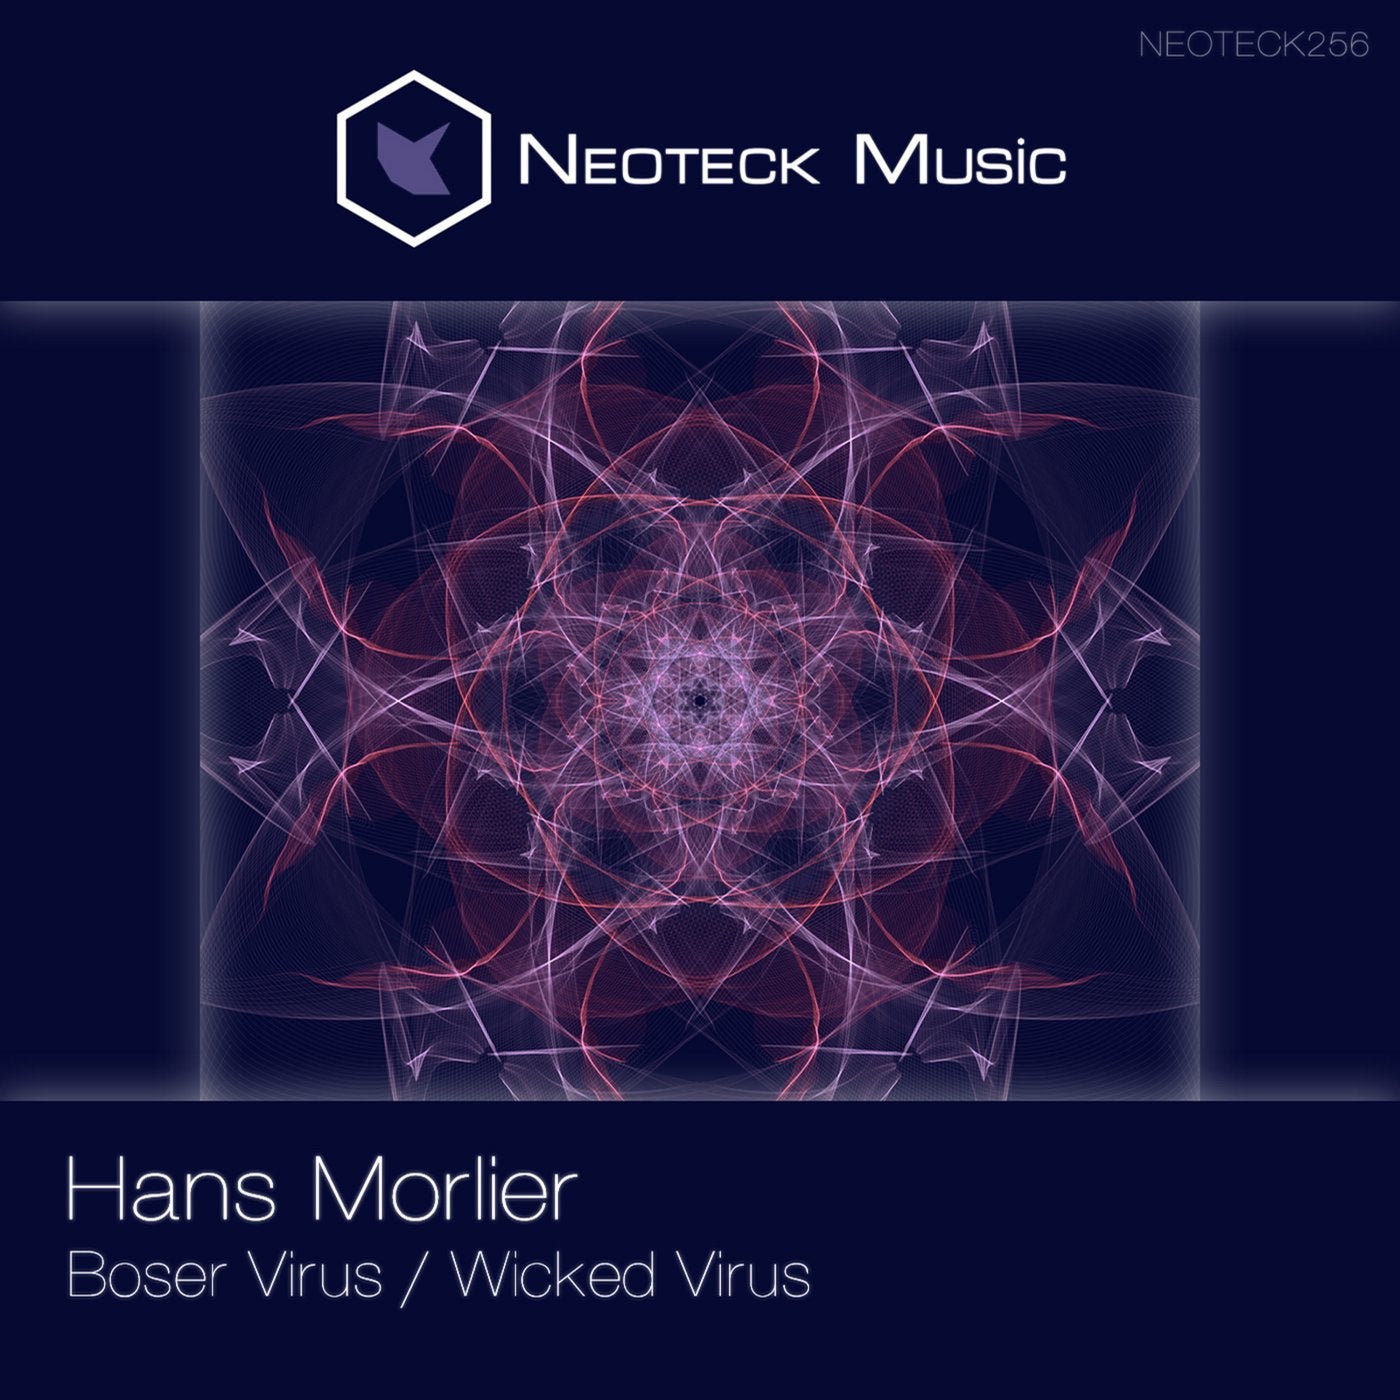 Boser Virus / Wicked Virus